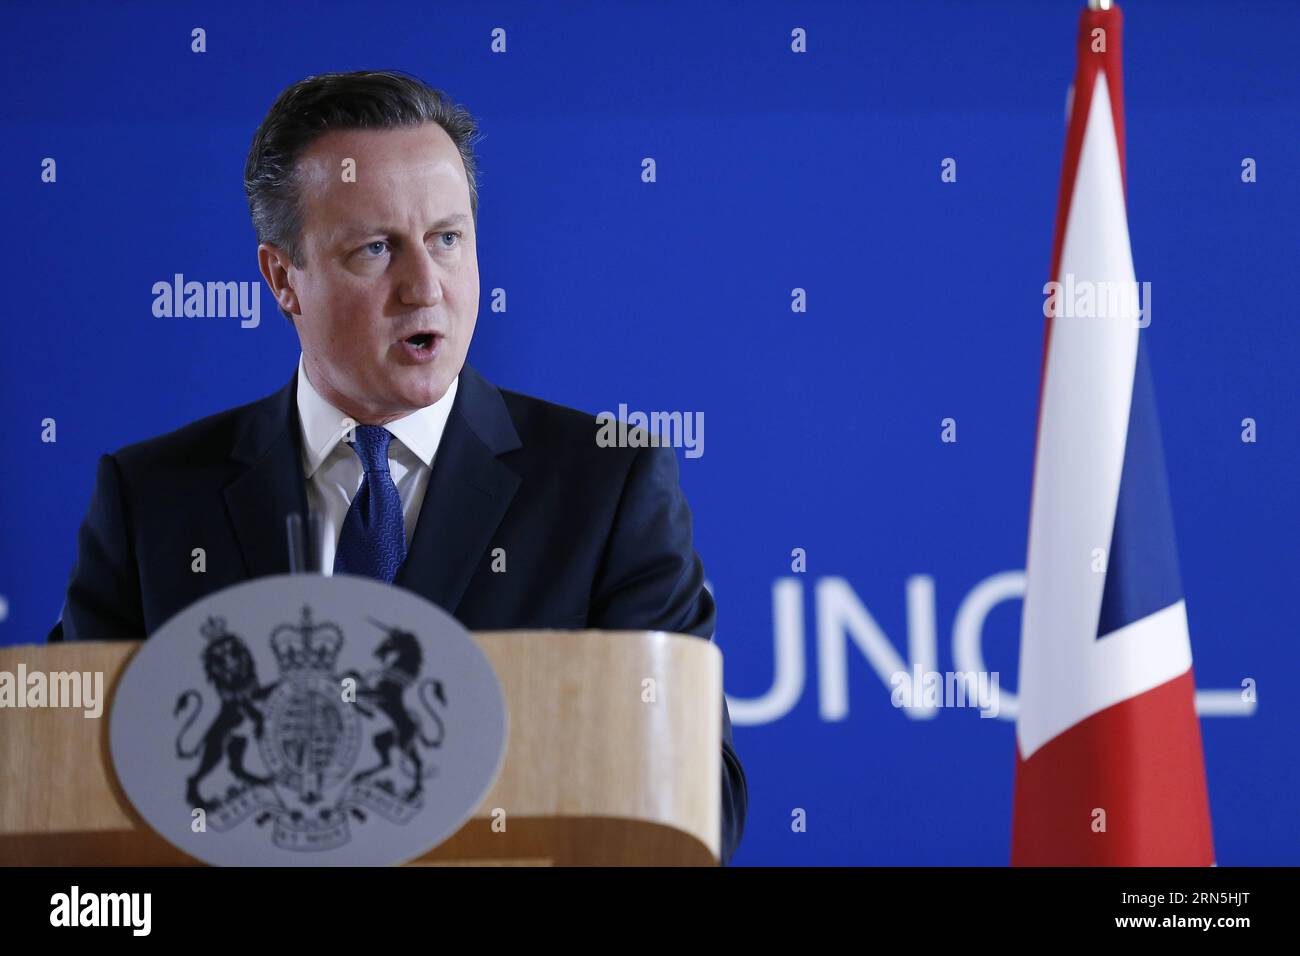 (150626) -- BRUXELLES, le 26 juin 2015 -- le Premier ministre britannique David Cameron prend la parole lors d'une conférence de presse après un sommet de l'UE à Bruxelles, Belgique, le 26 juin 2015. SOMMET BELGIQUE-UE YexPingfan PUBLICATIONxNOTxINxCHN 150626 Bruxelles juin 26 2015 le Premier ministre britannique David Cameron prend la parole lors d'une conférence de presse après le sommet de l'UE à Bruxelles Belgique juin 26 2015 Belgique Sommet de l'UE YexPingfan PUBLICATIONxNOTxINxCHN Banque D'Images